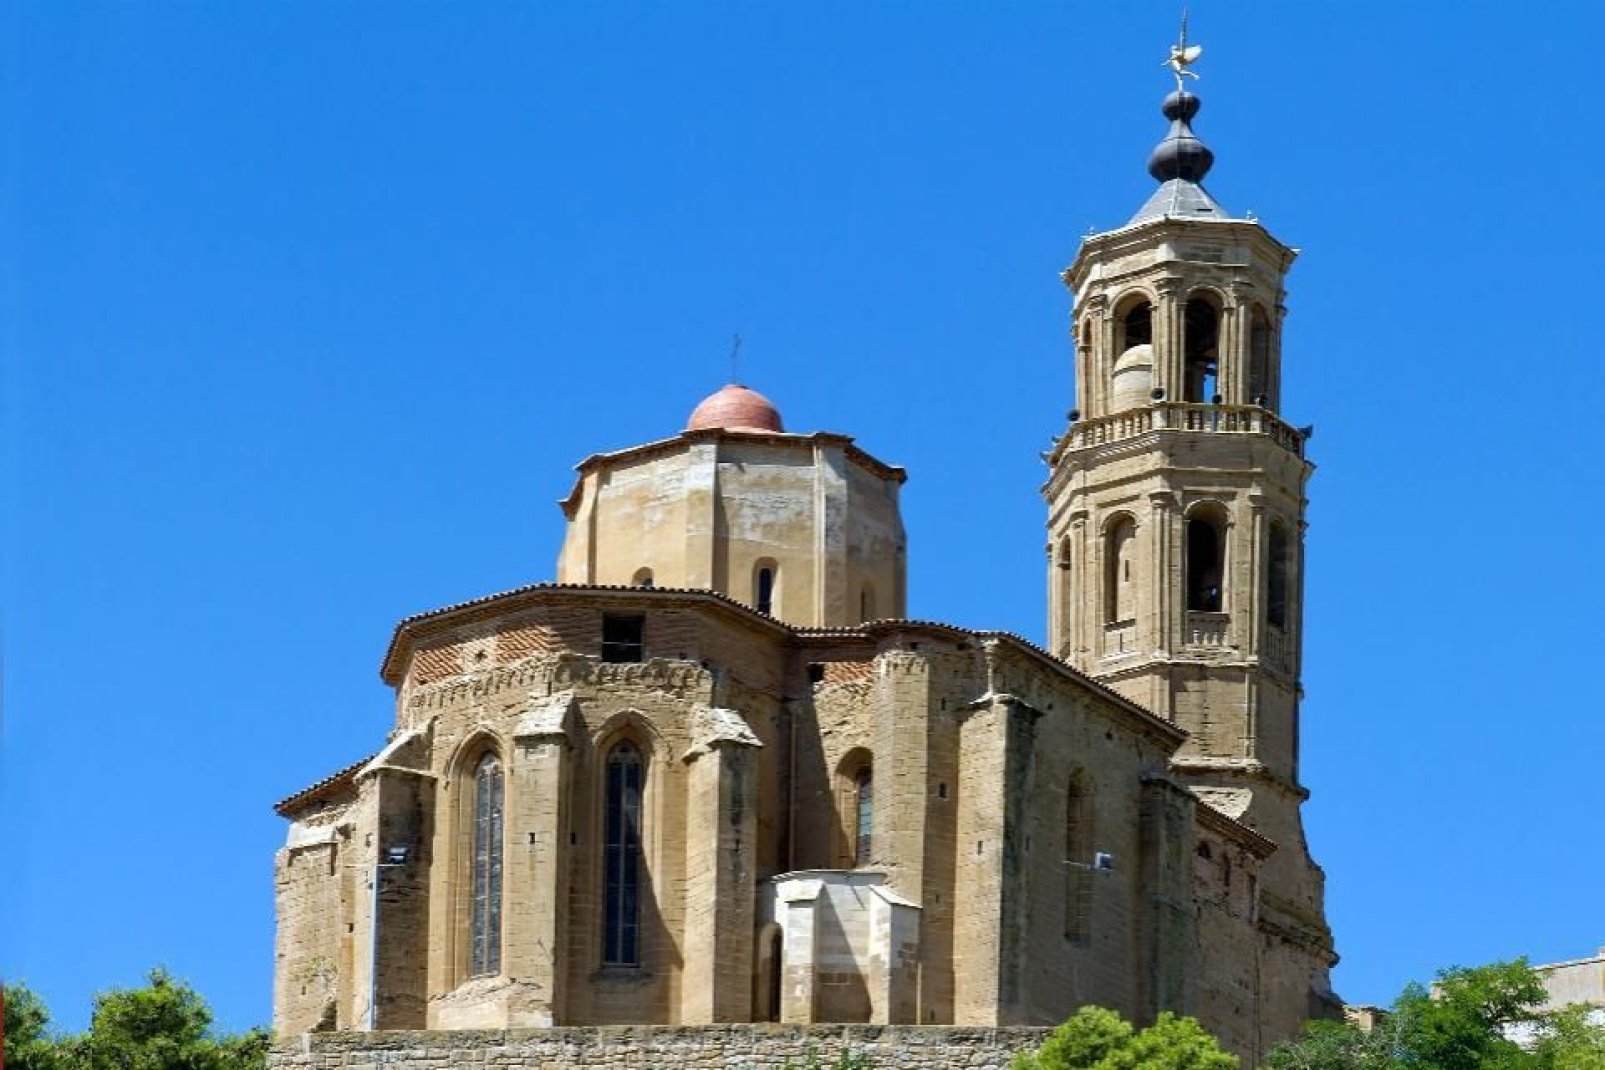 Sebbene la cattedrale della Seu Vella sia il monumento emblematico della città, questa piccola chiesa merita una visita.